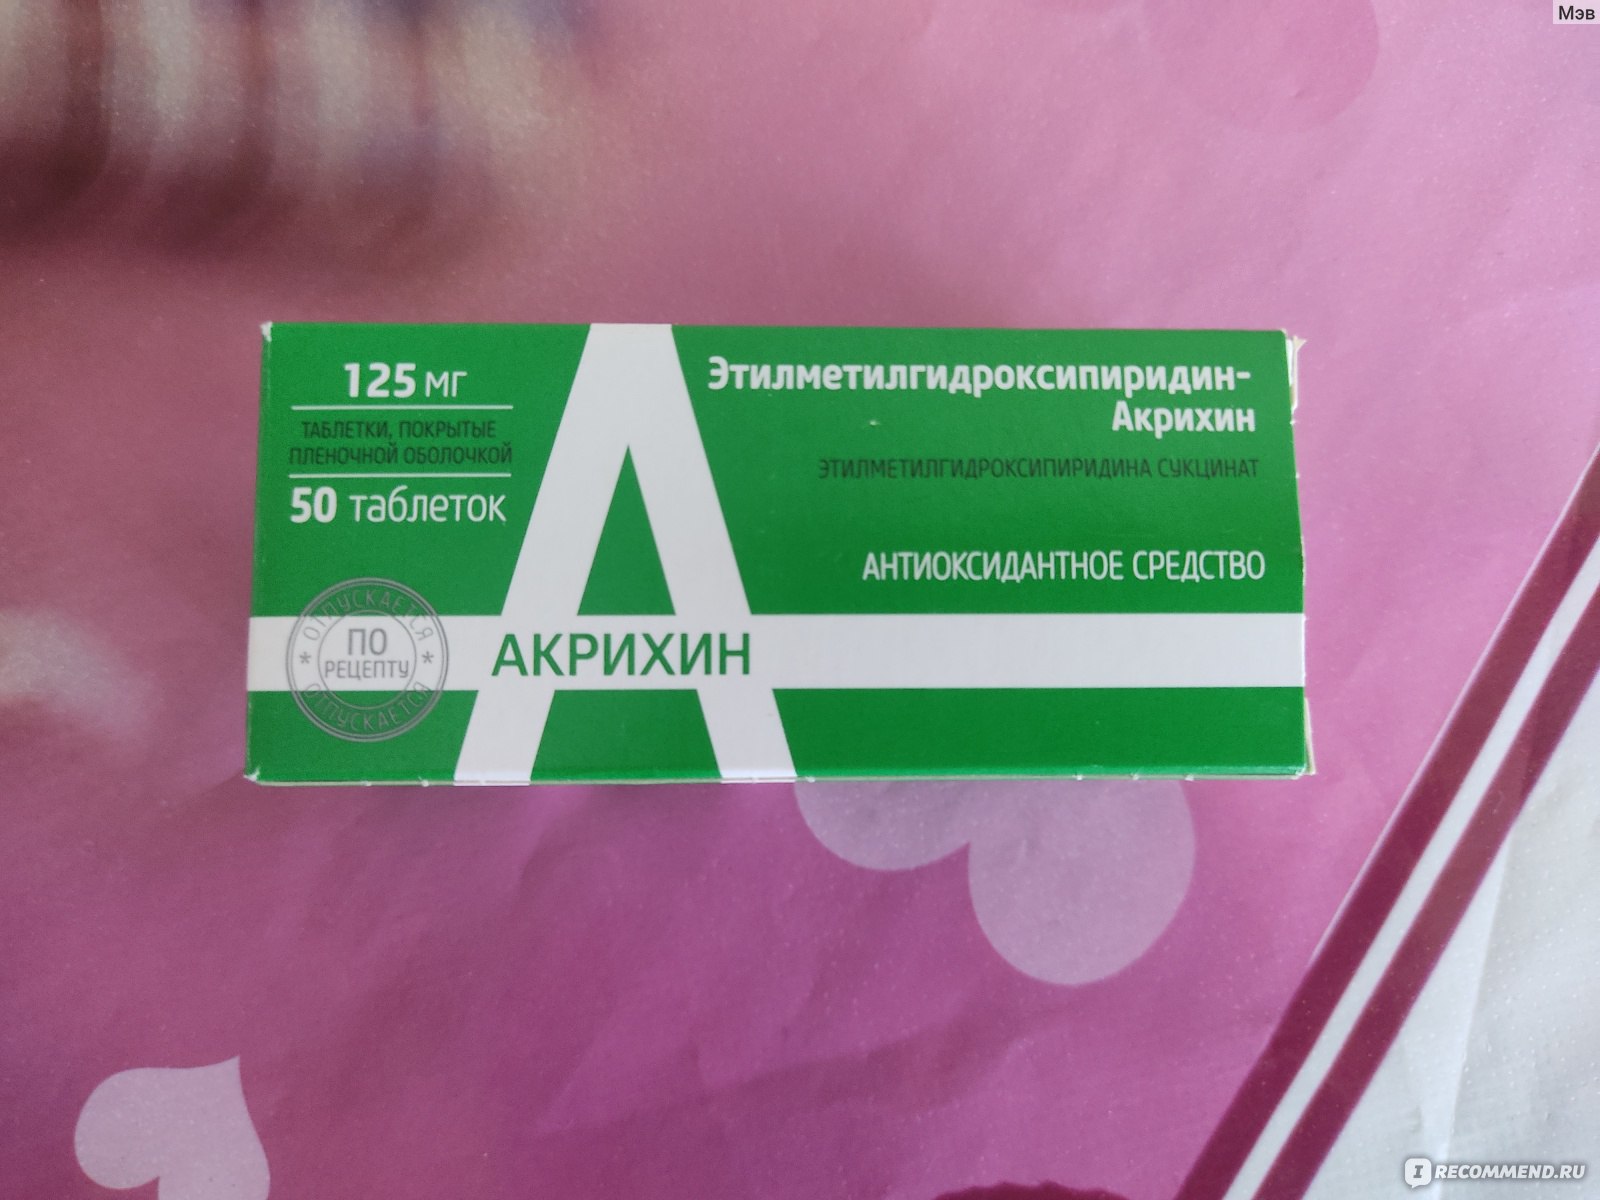 Лекарственный препарат Акрихин Этилметилгидроксипиридина сукцинат .